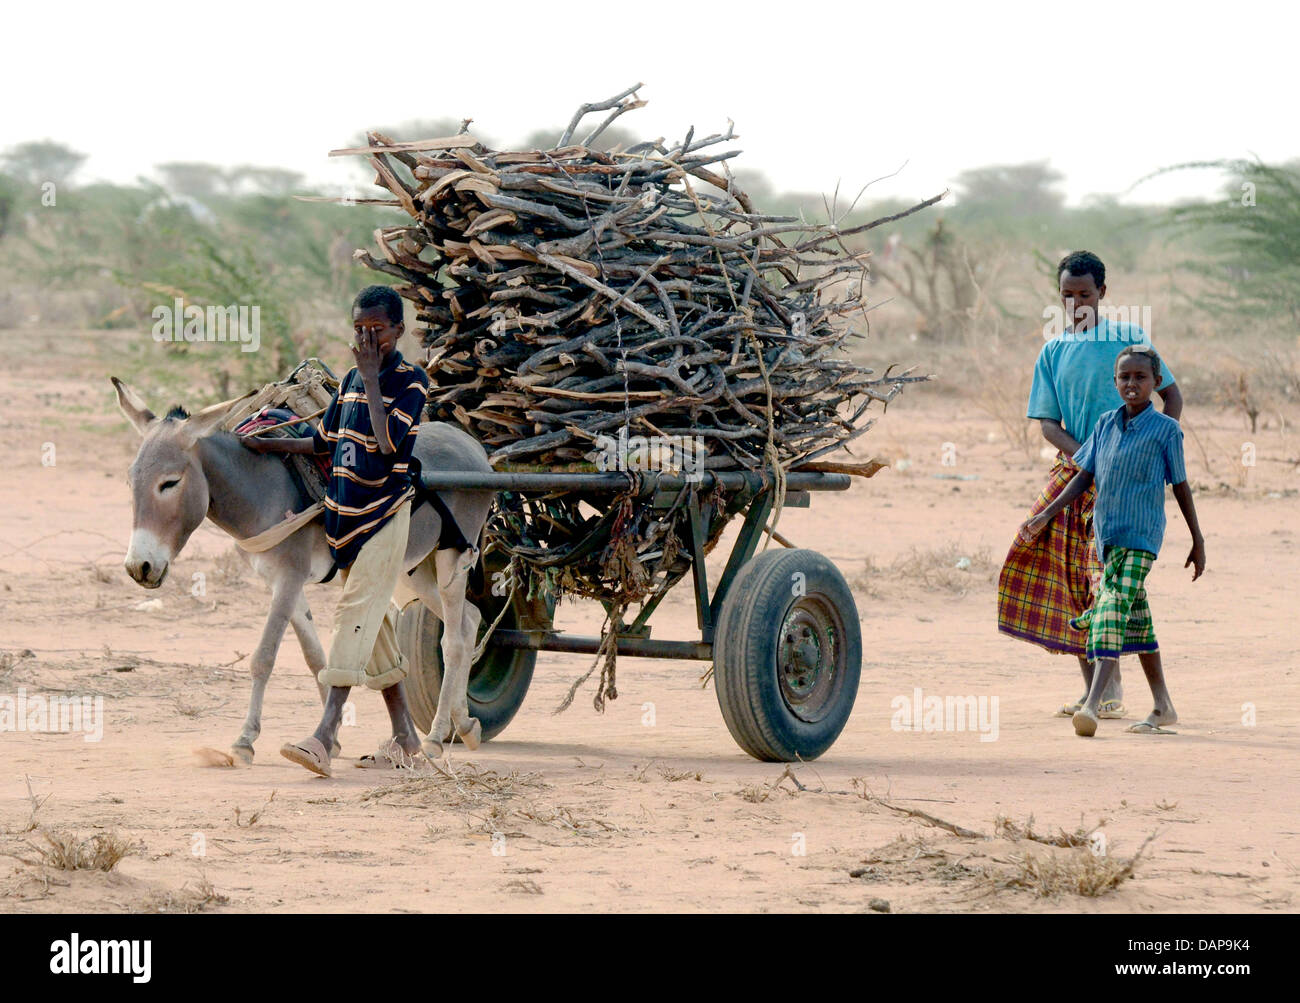 Jungen haben Brennholz in einem Flüchtlingslager in Dadaab in Kenia 4. August 2011 gesammelt. Somalia und Kenia durch eines der schlimmsten Dürren und Hungersnöte in sechs Jahrzehnten getroffen worden, mehr als 350 000 Flüchtlinge Unterschlupf gefunden haben, in der weltweit größten Flüchtlingslager. Foto: Boris Roessler Stockfoto